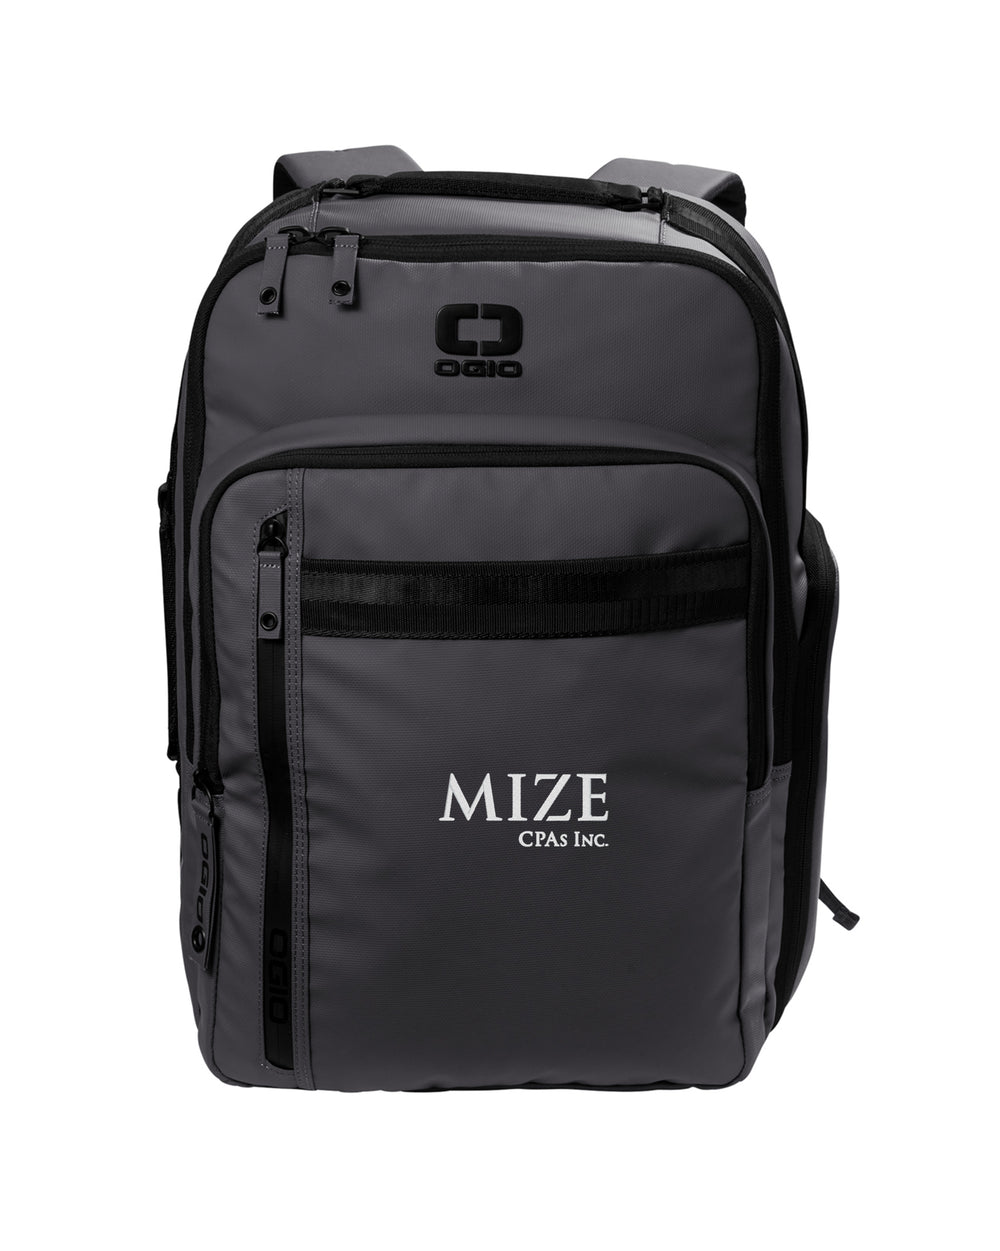 Mize CPAs Inc. - OGIO Commuter XL Pack - 91012